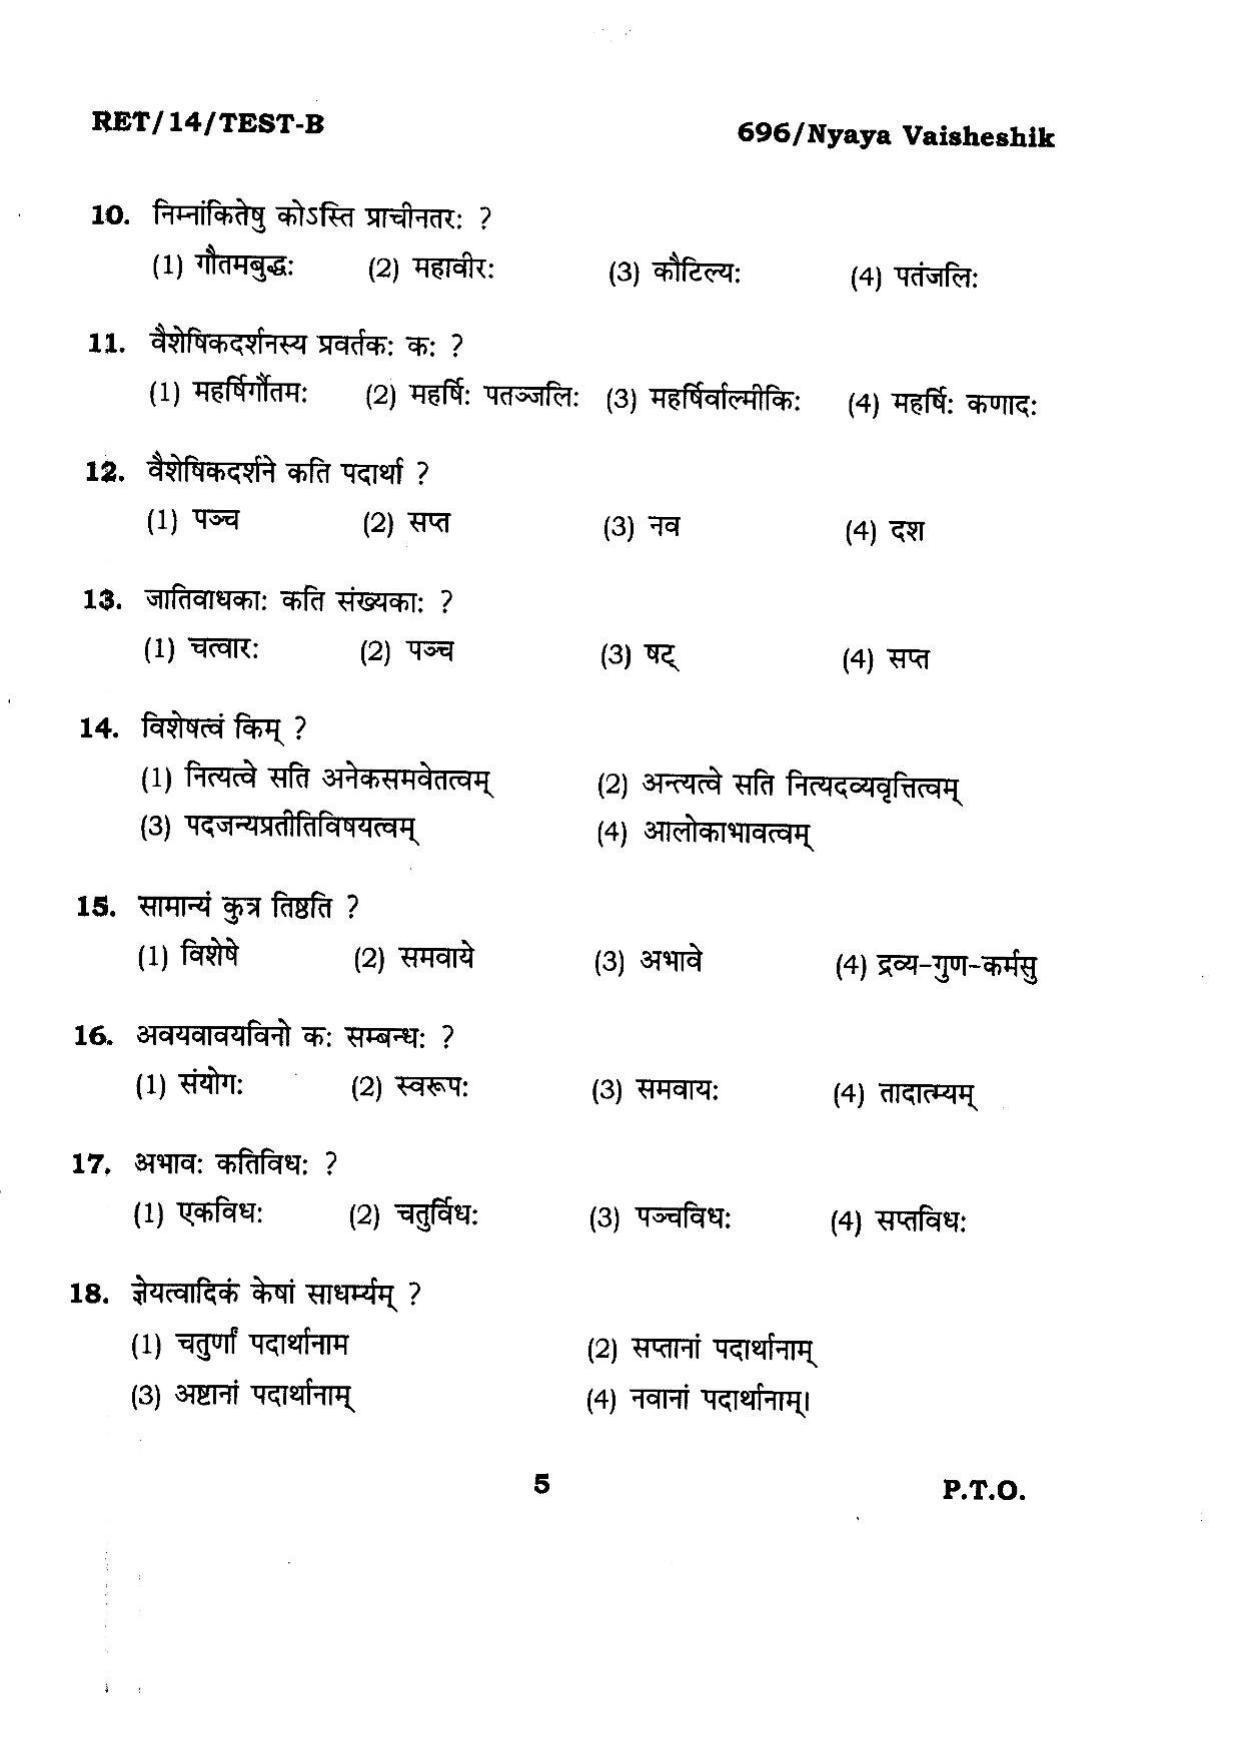 BHU RET Nyaya Vaisheshik 2014 Question Paper - Page 5